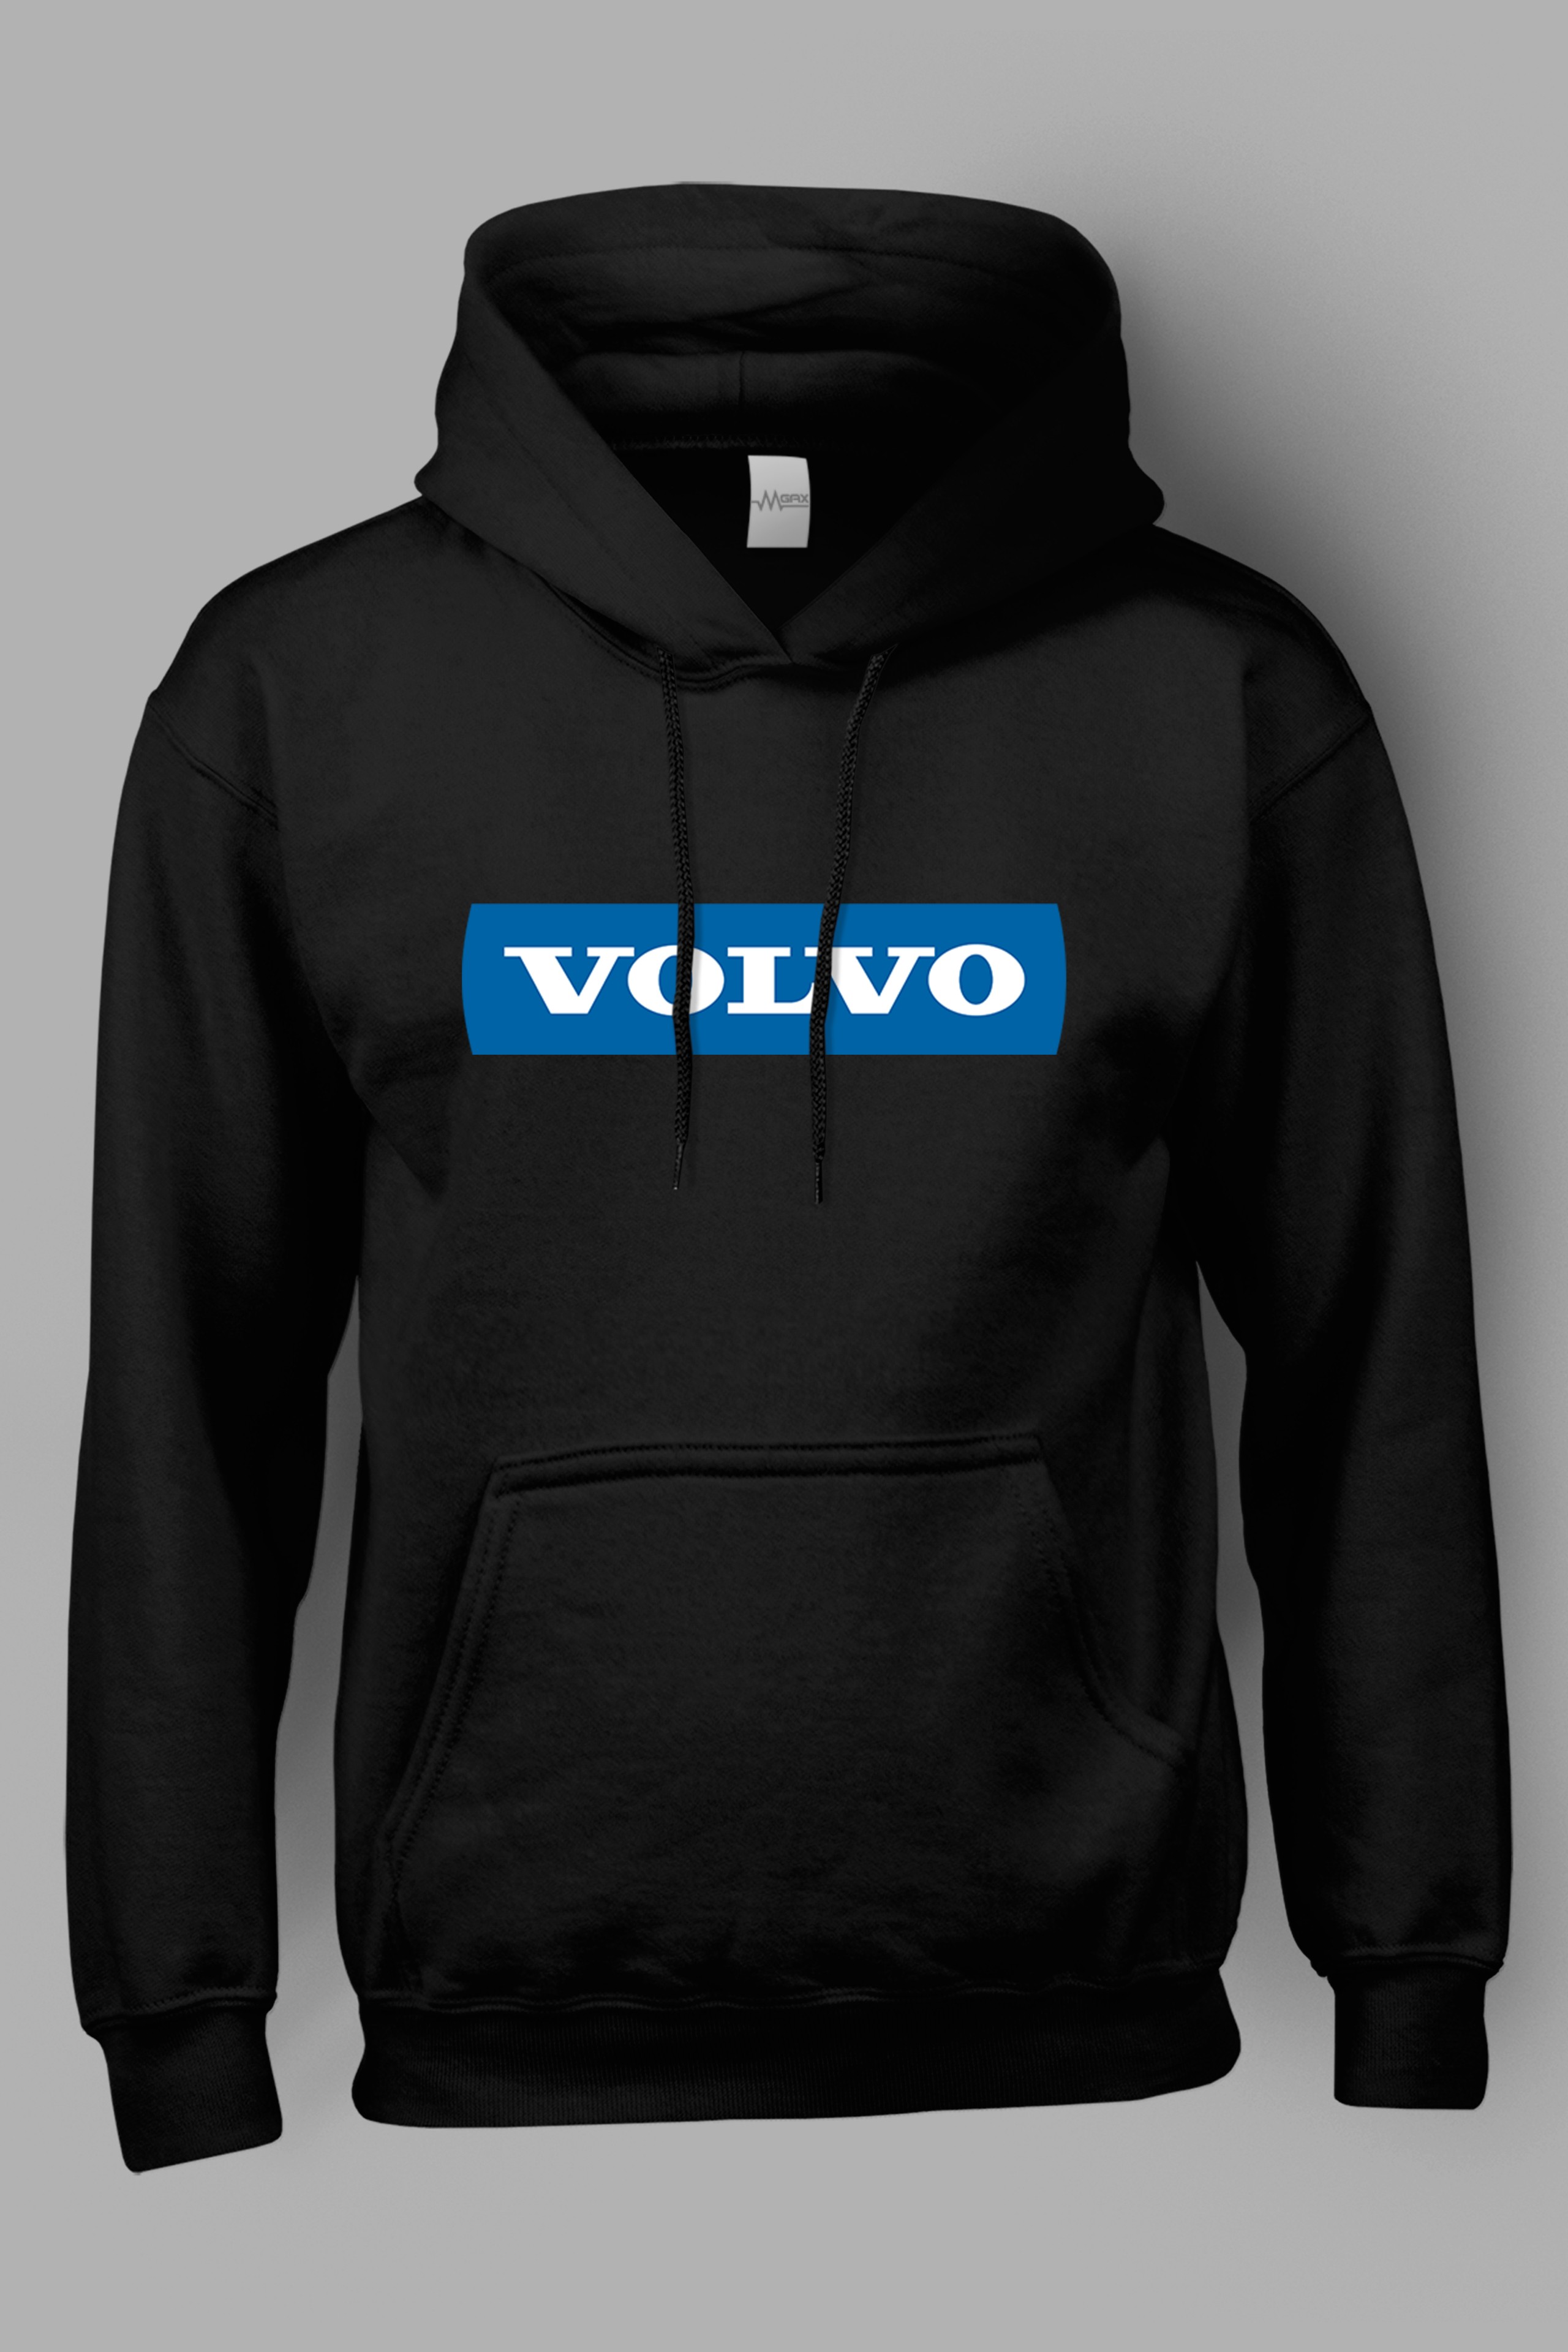 Volvo Göğüs Baskılı Kapüşonlu Sweatshirt